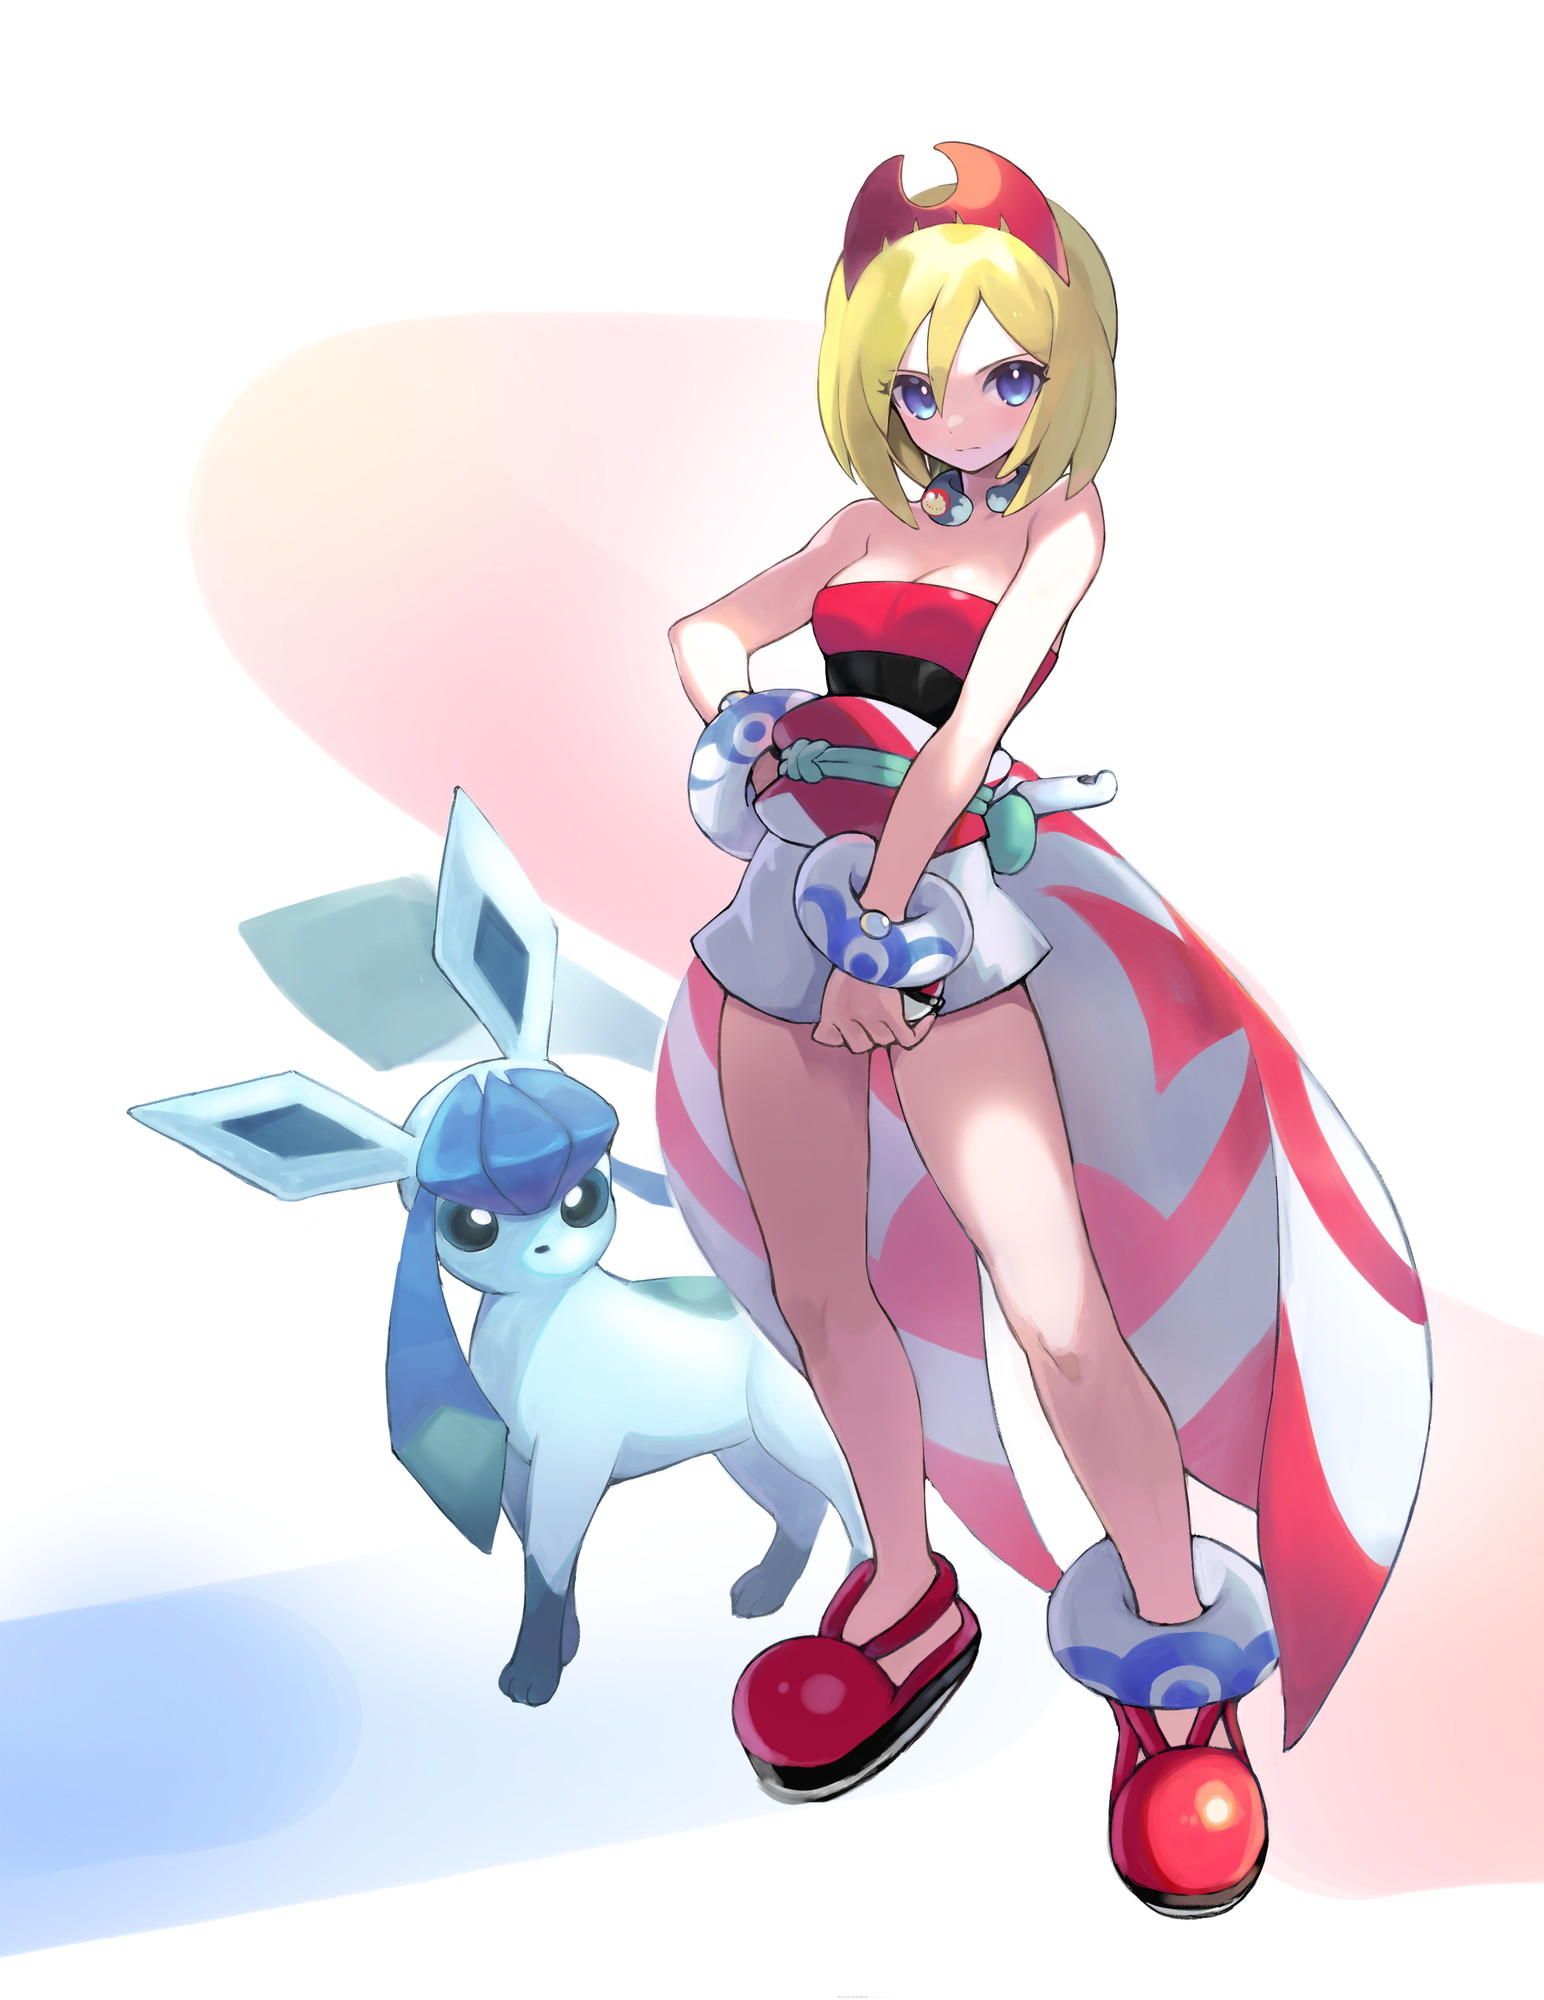 【Pokemon】Shinju Dan's Kai's erotic &amp; moe image ☆ 15